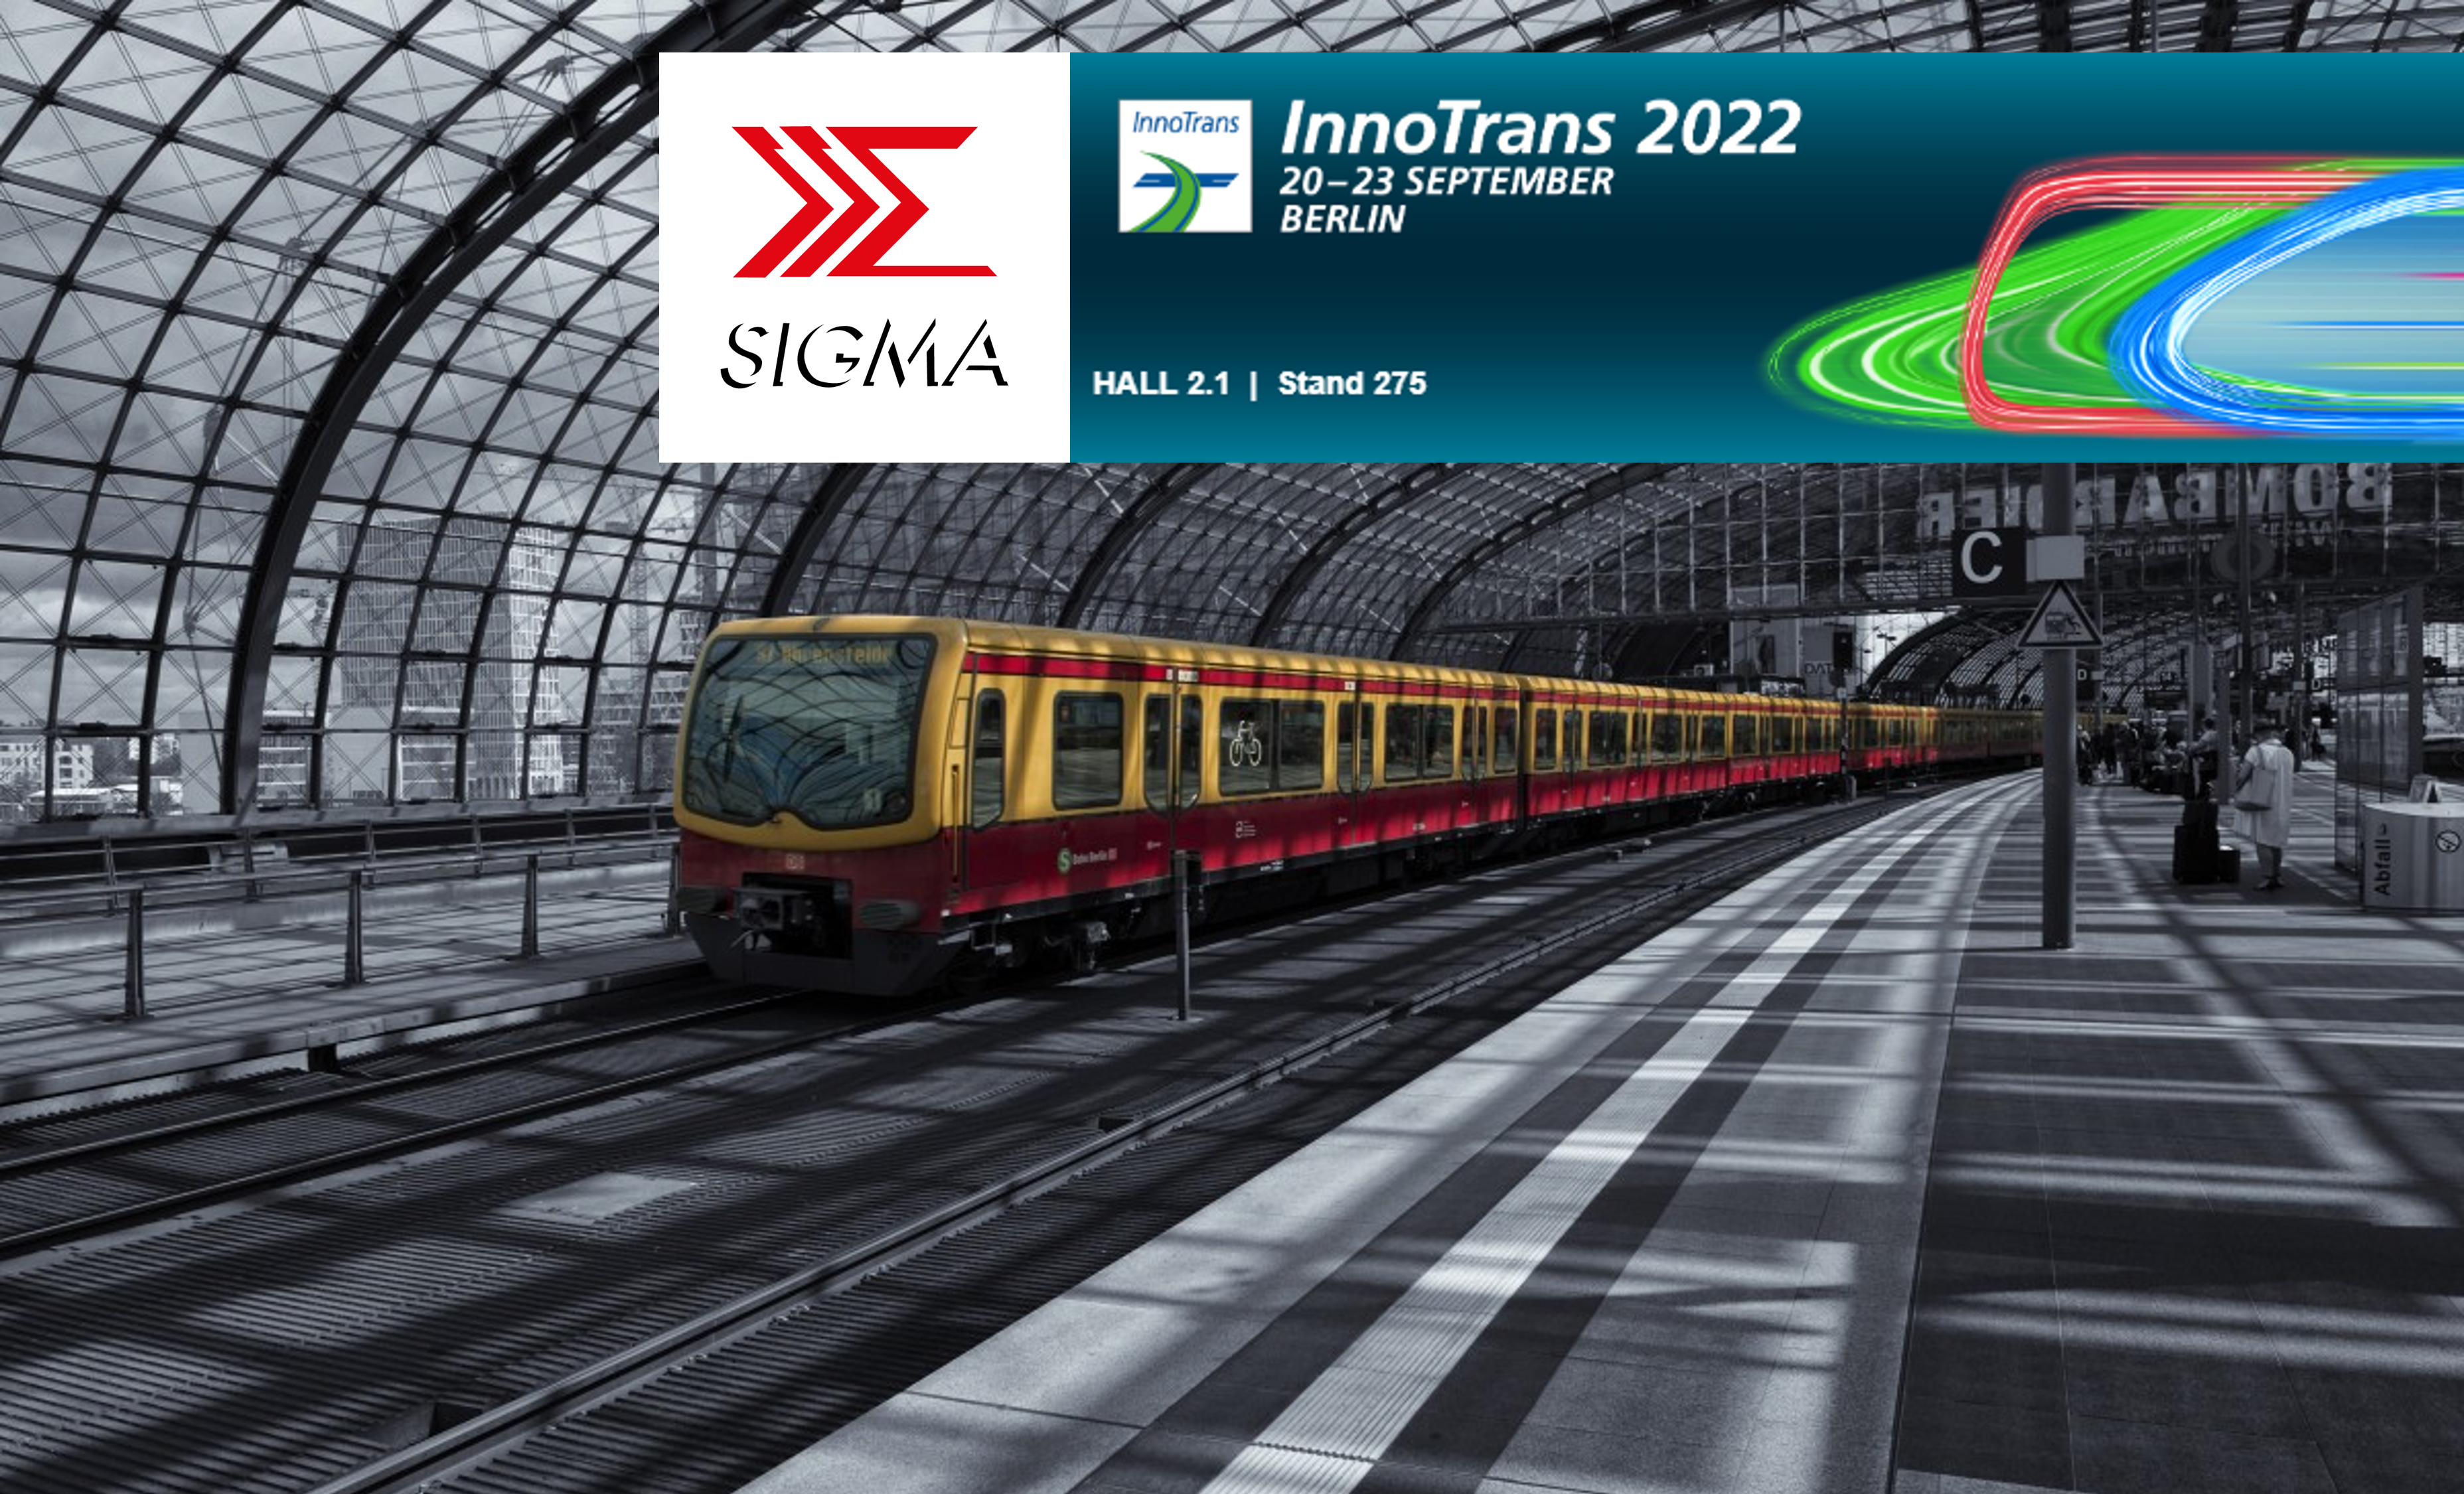 Sigma at InnoTrans 2022 in Berlin